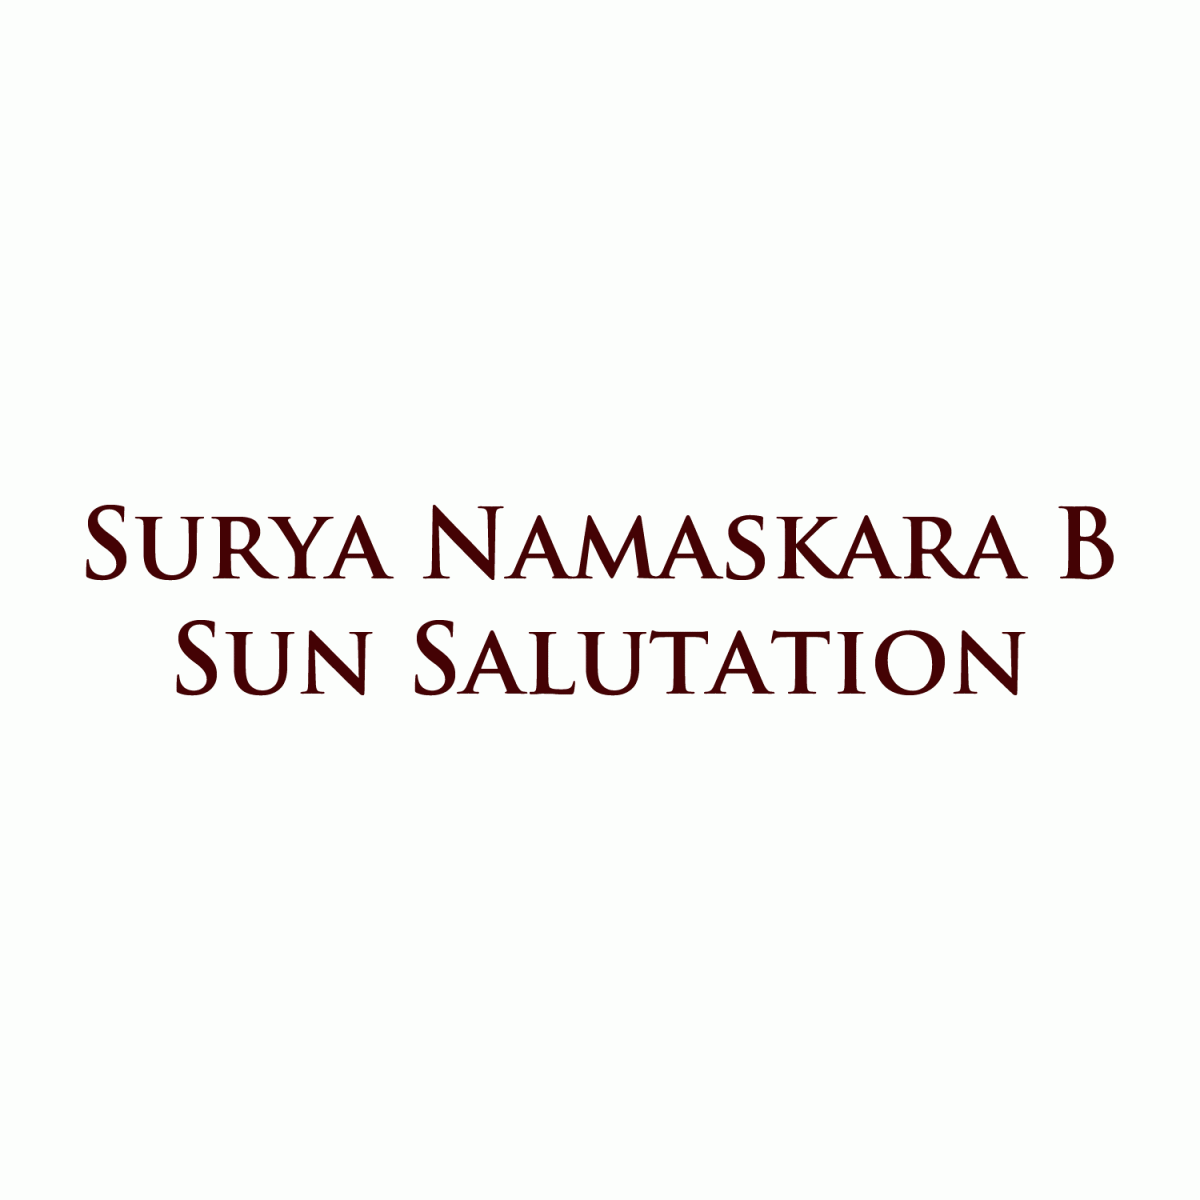 Sun Salutation: Surya Namaskara B